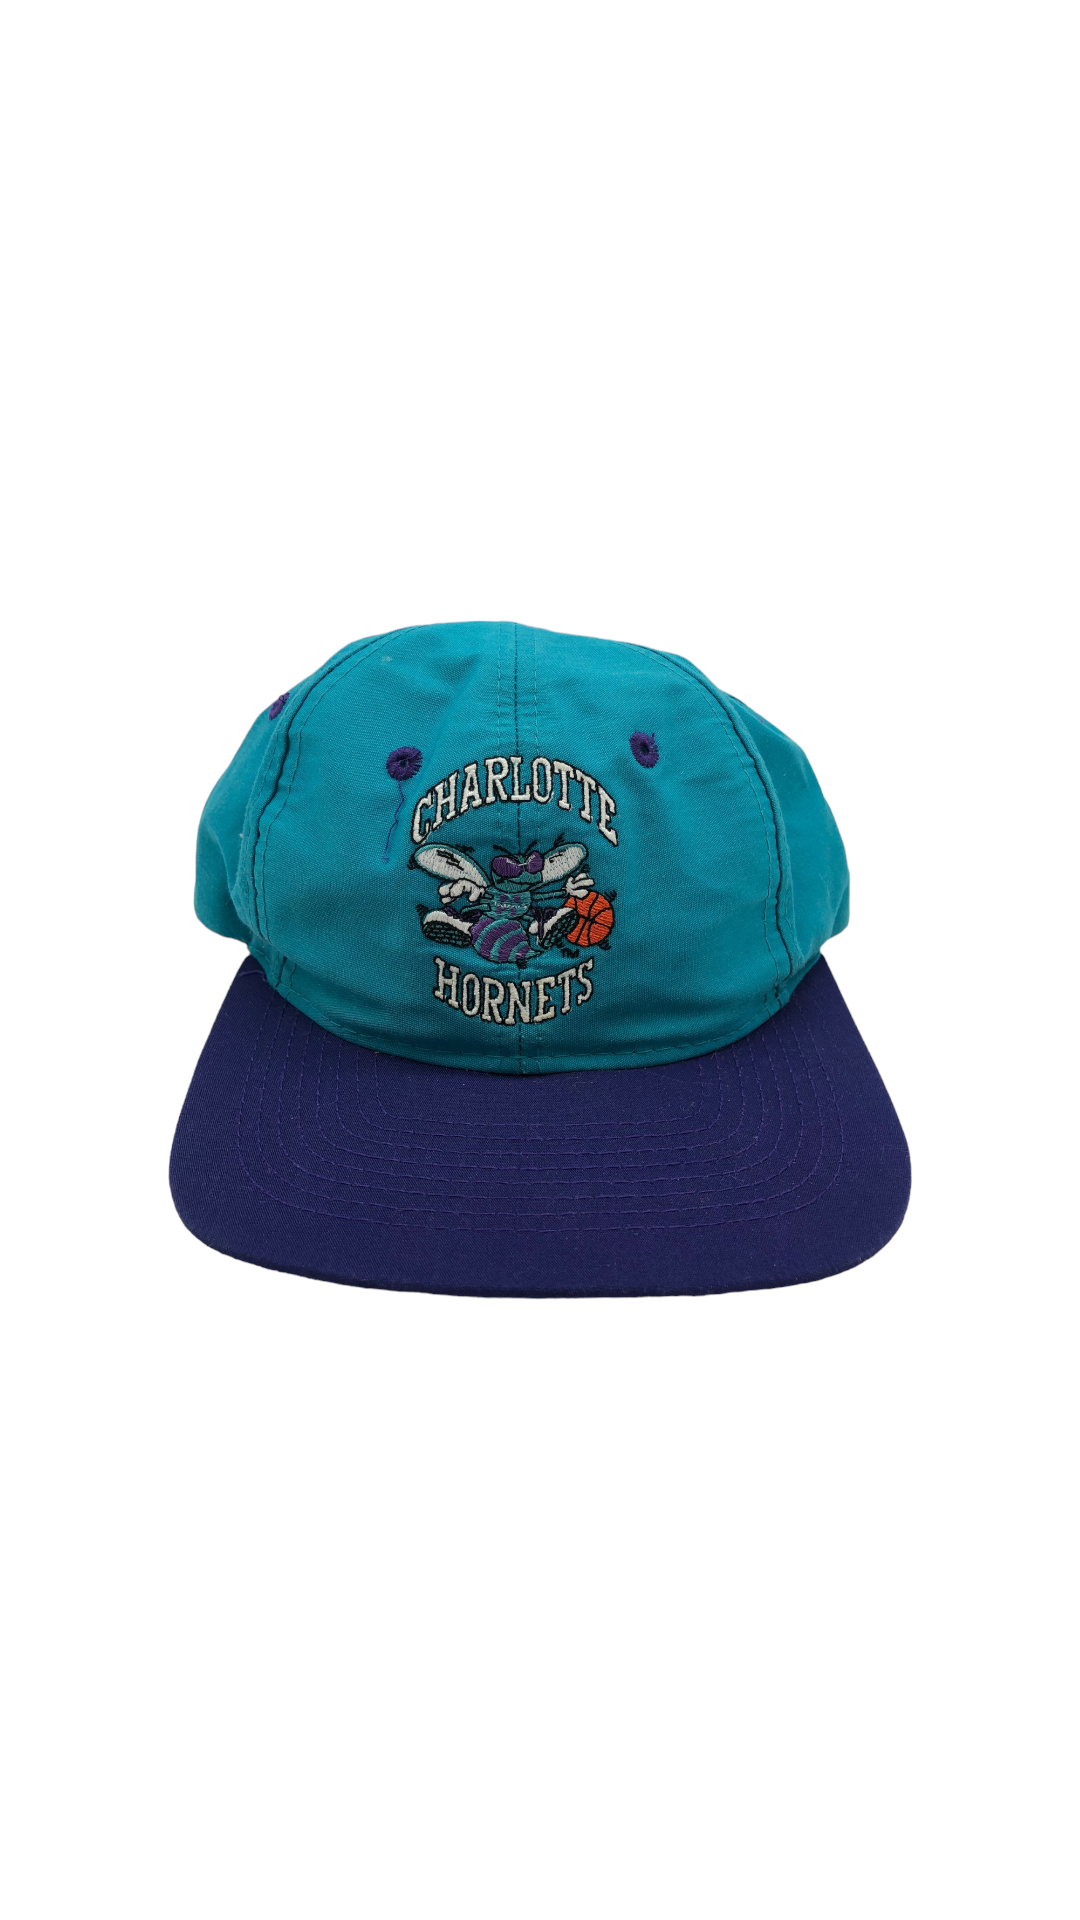 VTG Charlotte Hornets Compeiter Hat